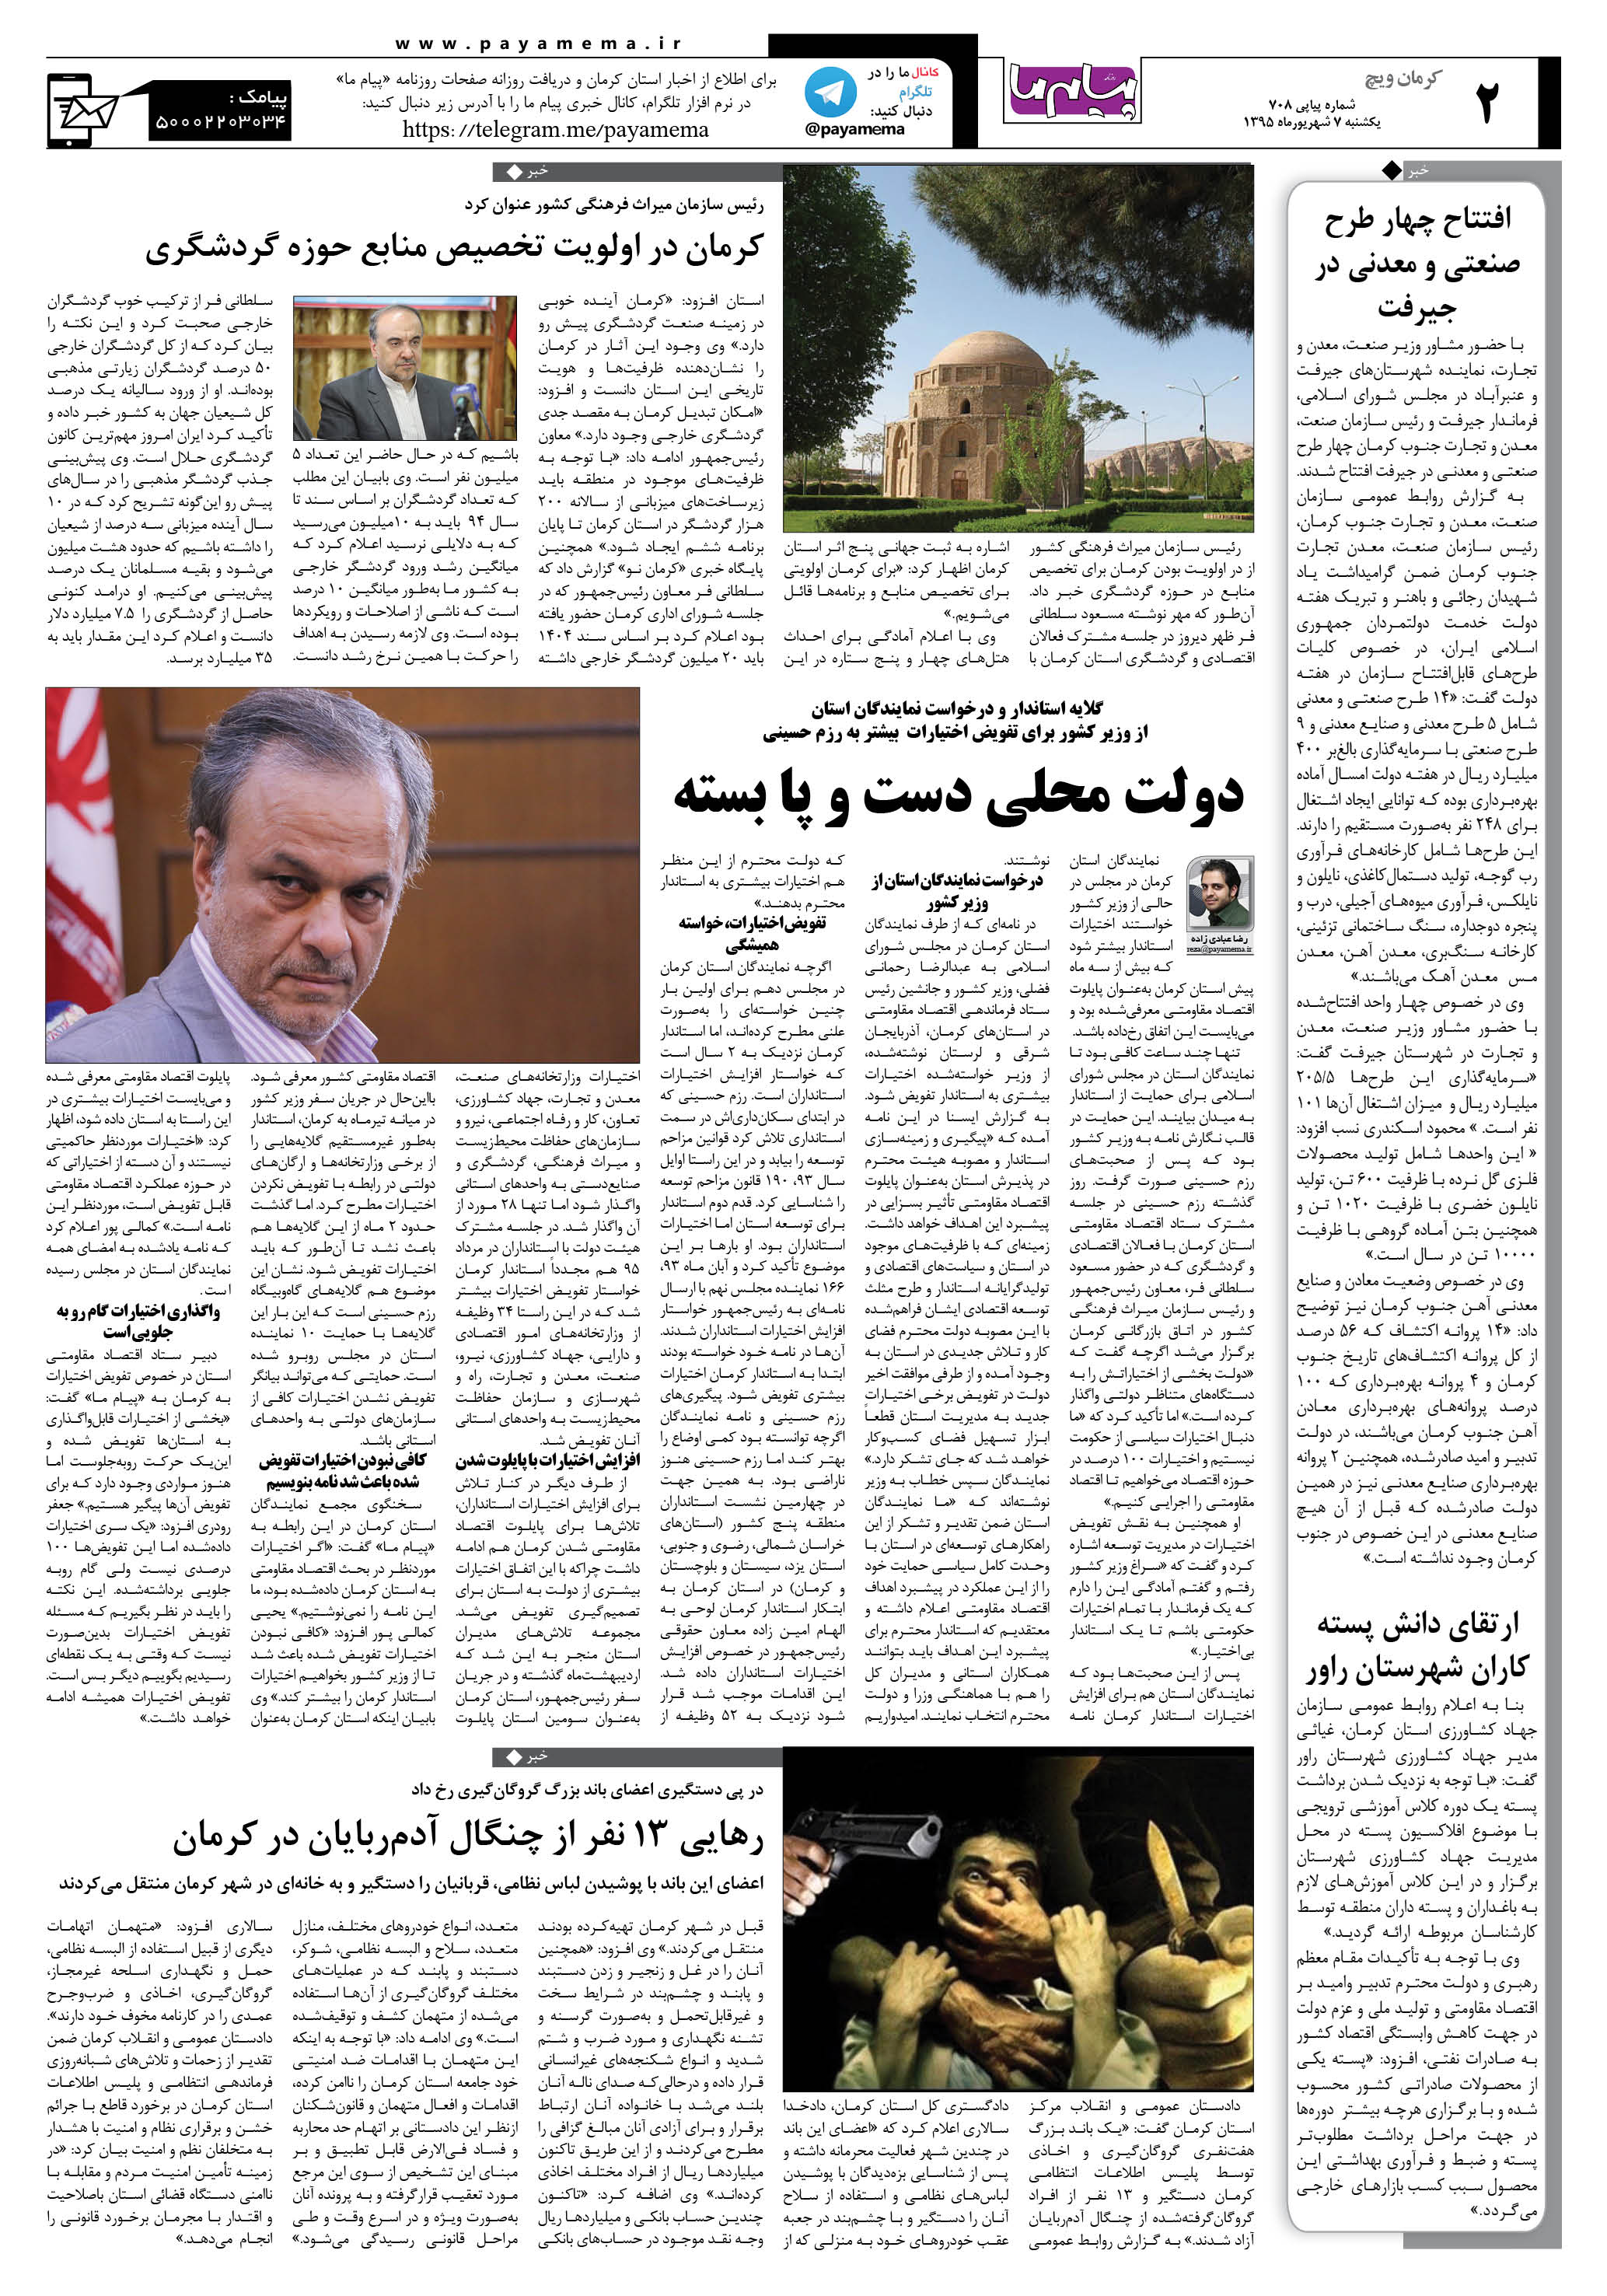 صفحه کرمان ویج شماره 708 روزنامه پیام ما